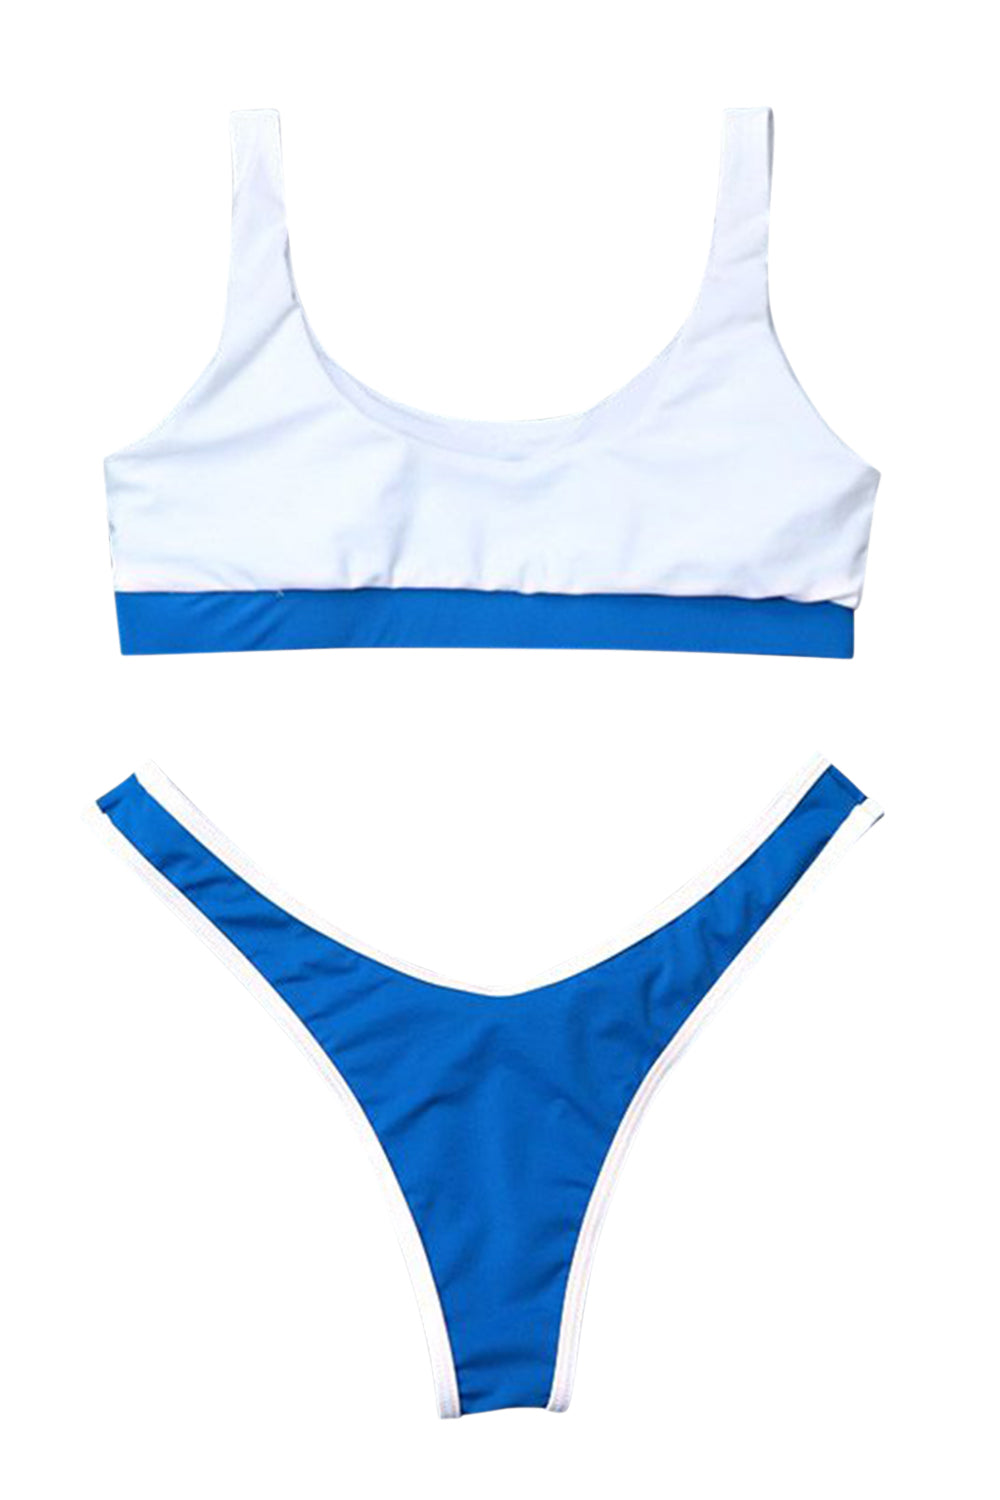 Iyasson Womens U-Shaped Low Rise Two Pieces Bikini Set Padded Stitching Swimsuit